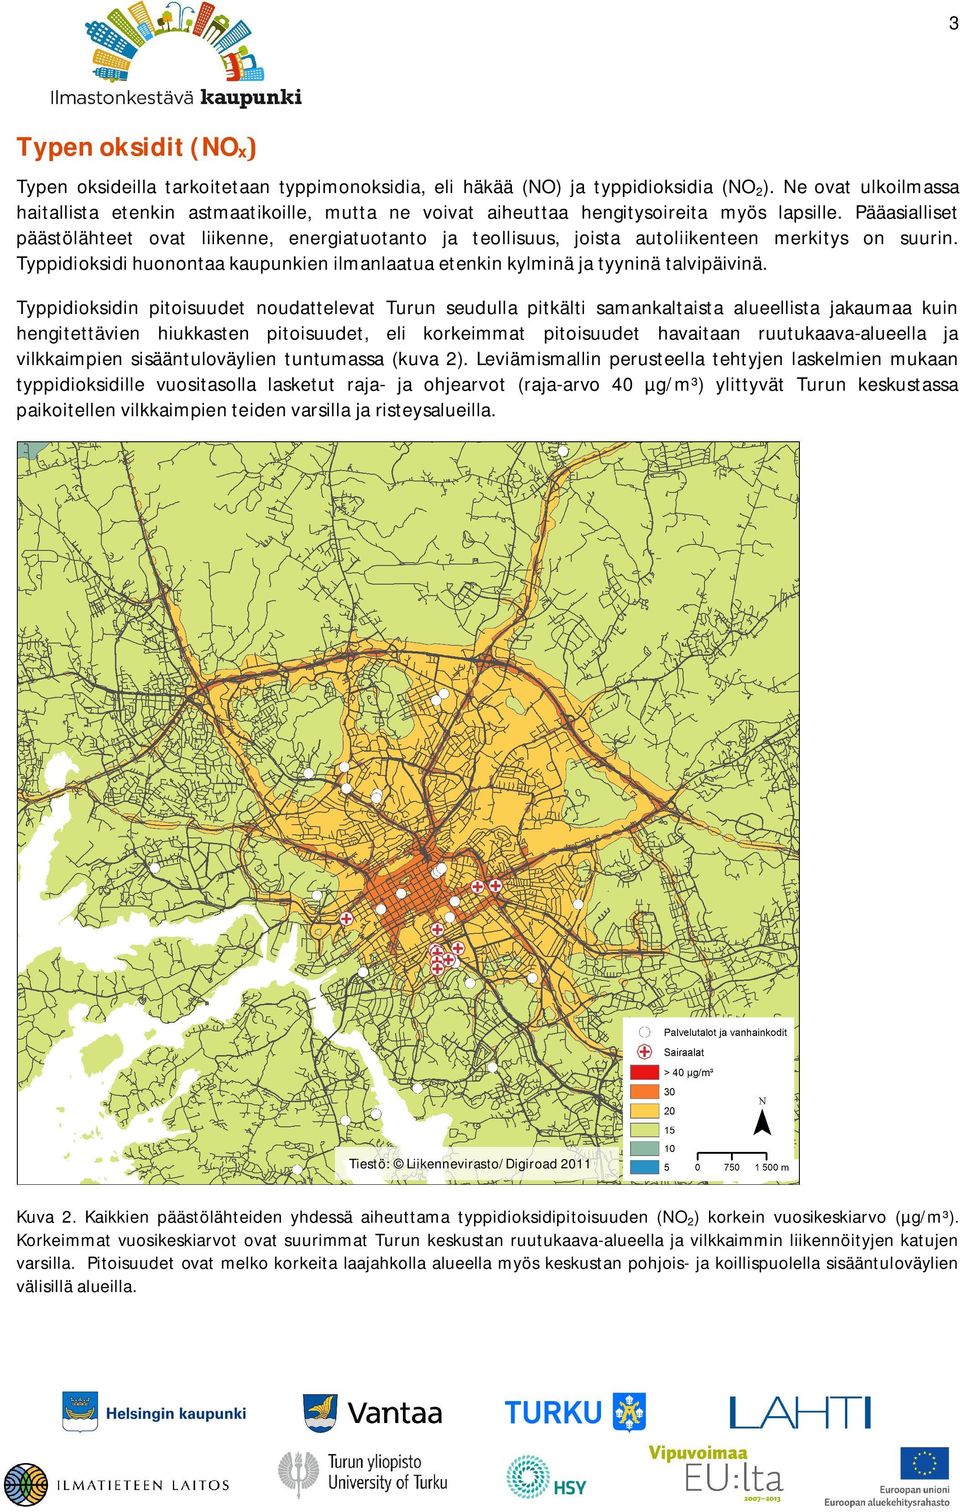 Rikkidioksidin pitoisuudet ovat koko maassa pieniä muihin ilmansaasteisiin verrattuna, eikä Turku ole tässä suhteessa poikkeus.